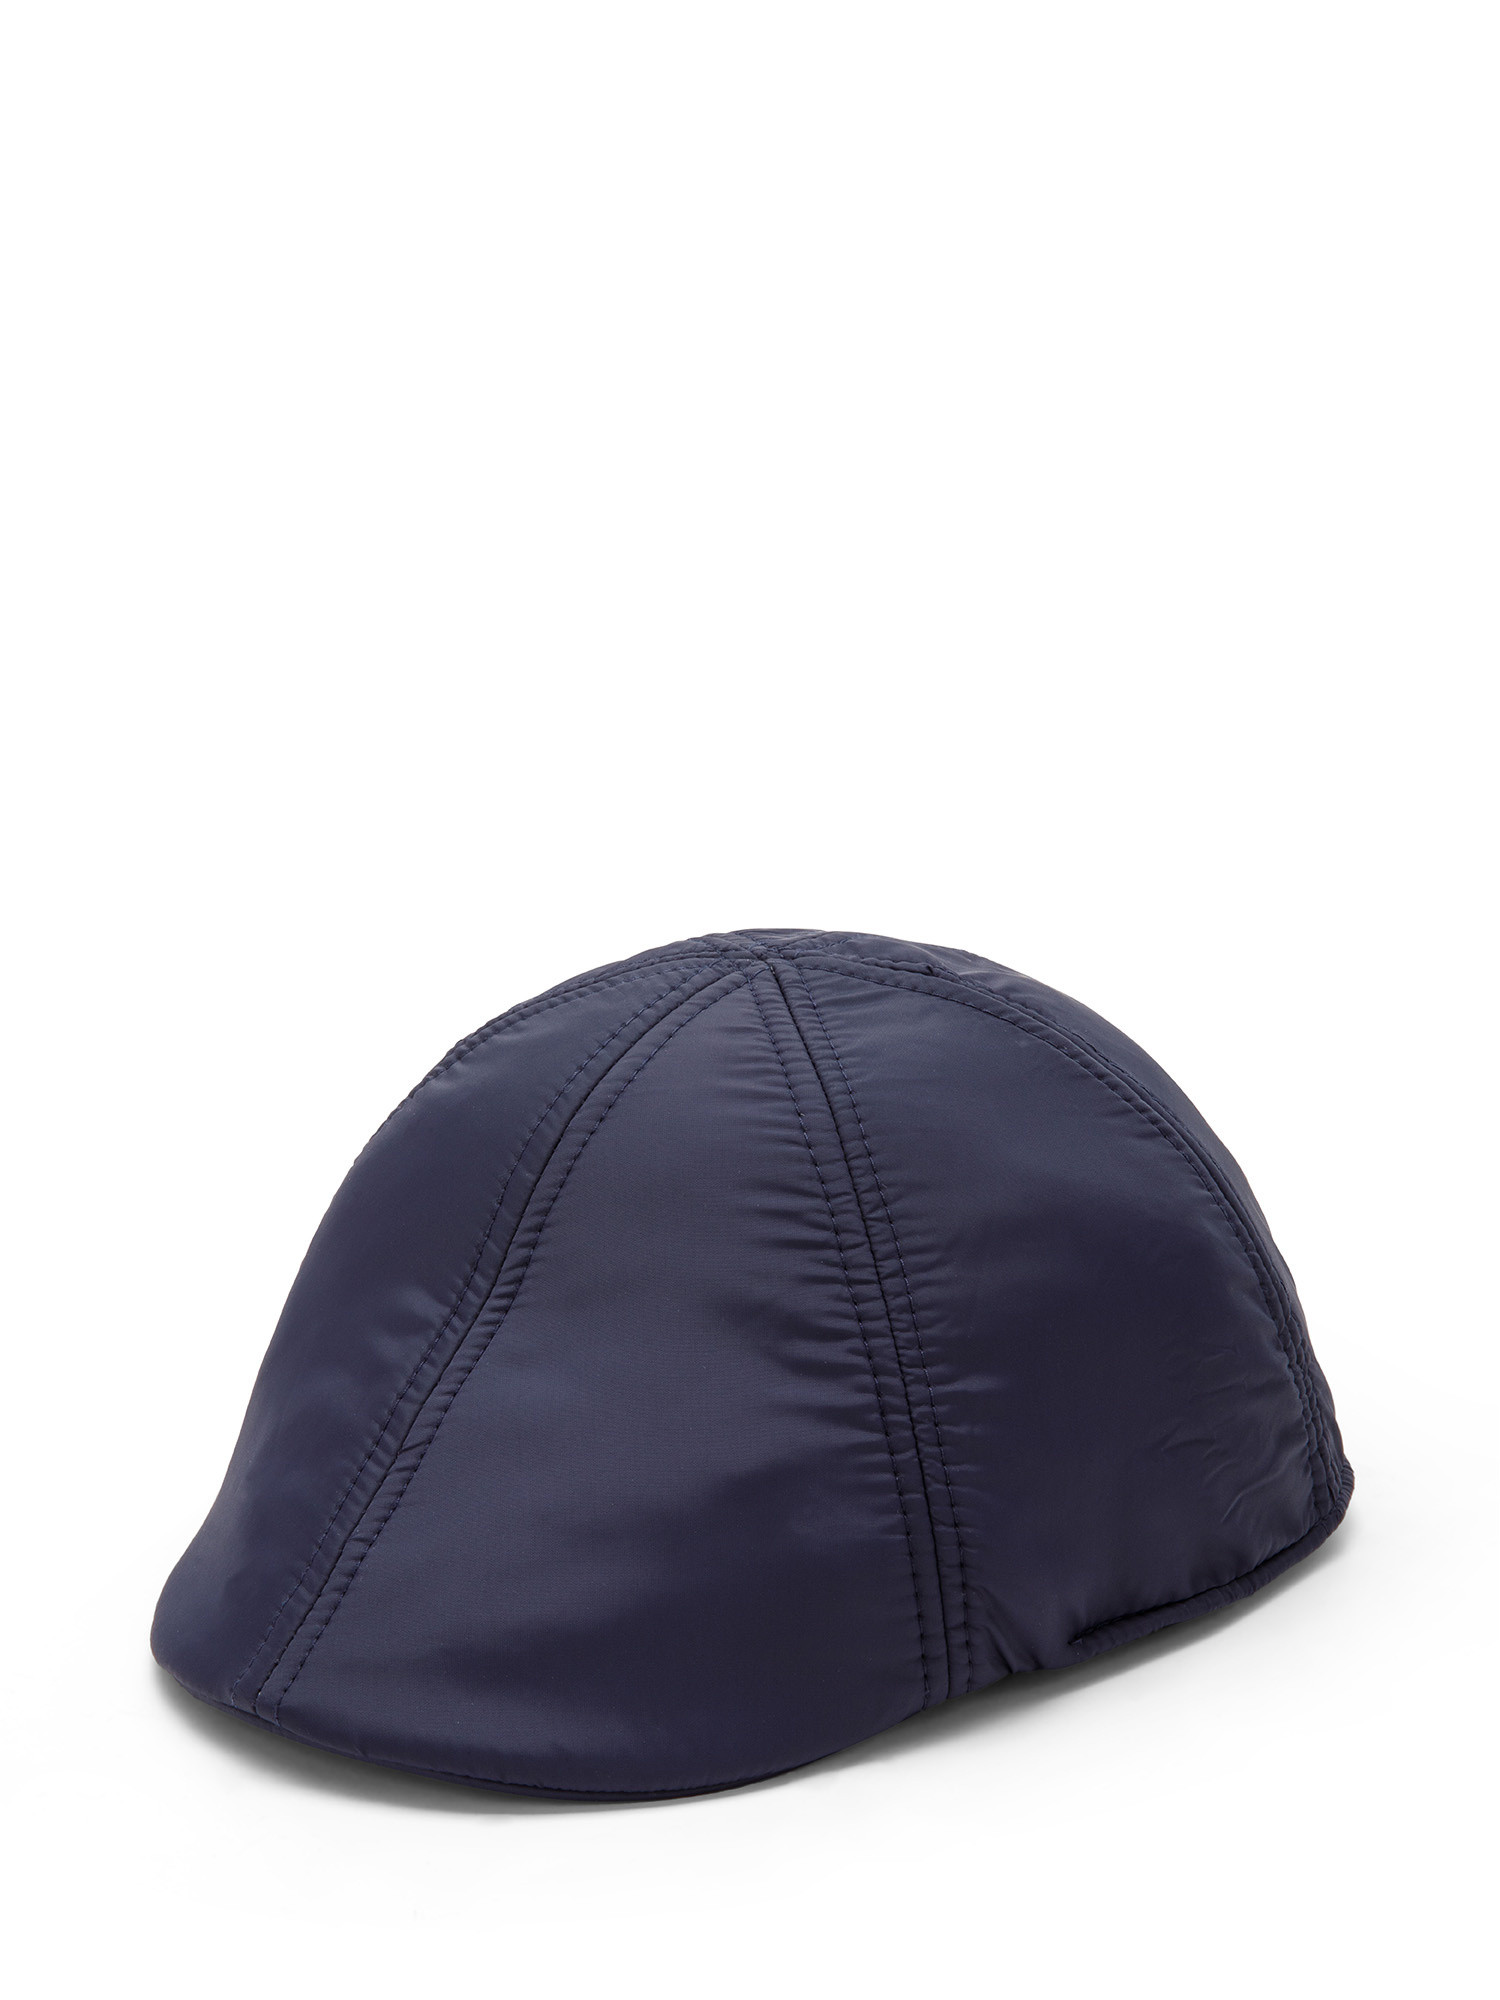 Luca D'Altieri - Nylon flat cap with elastic, Dark Blue, large image number 0